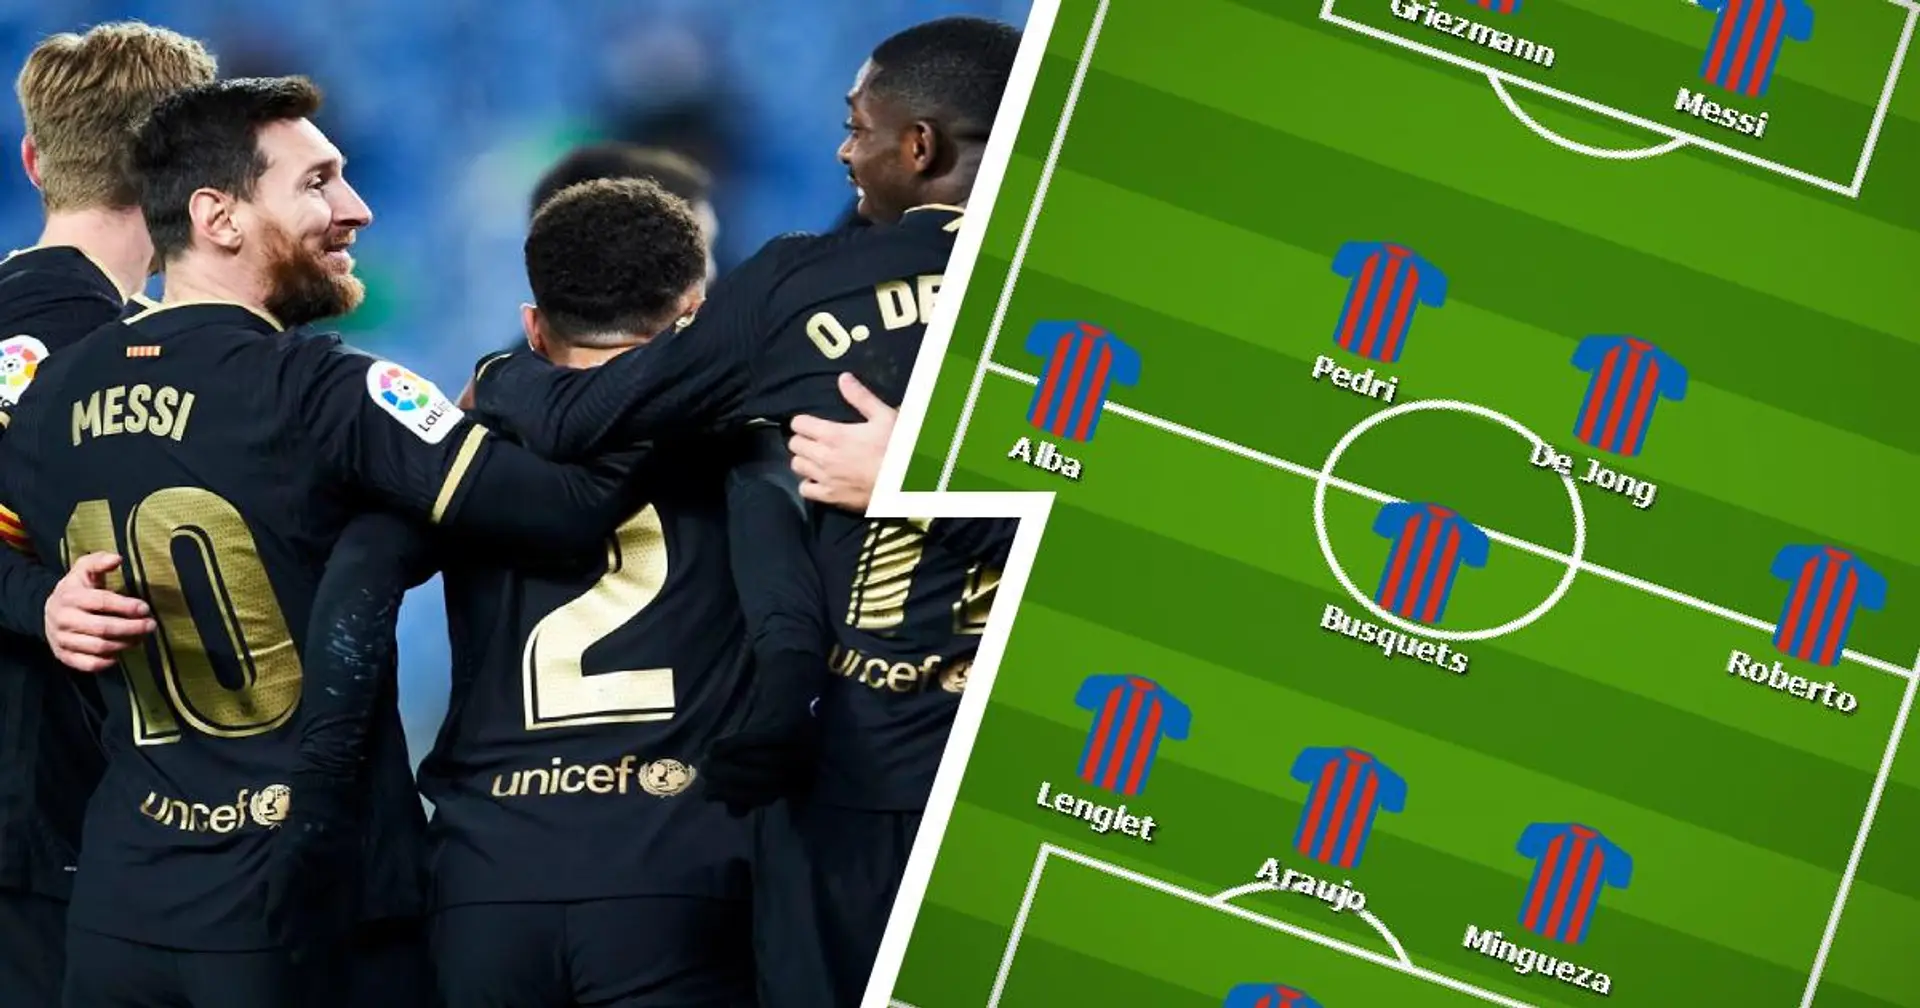 Griezmann, Dembele et Messi tous titulaires? Sélectionnez votre XI du Barça pour le choc contre le Real Valladolid parmi 3 options